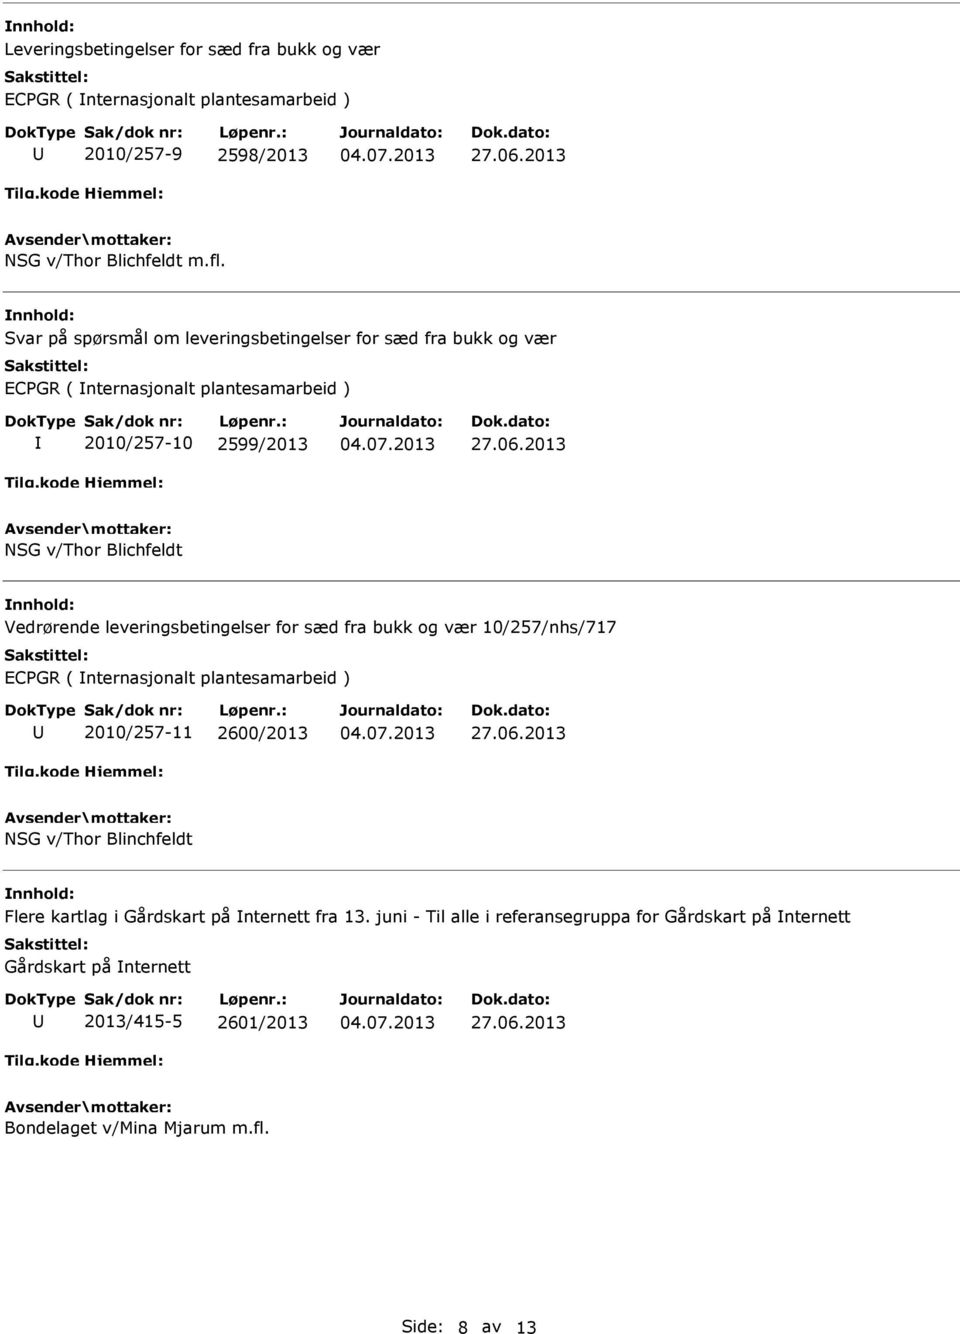 2013 NSG v/thor Blichfeldt Vedrørende leveringsbetingelser for sæd fra bukk og vær 10/257/nhs/717 ECPGR ( nternasjonalt plantesamarbeid ) 2010/257-11 2600/2013 27.06.